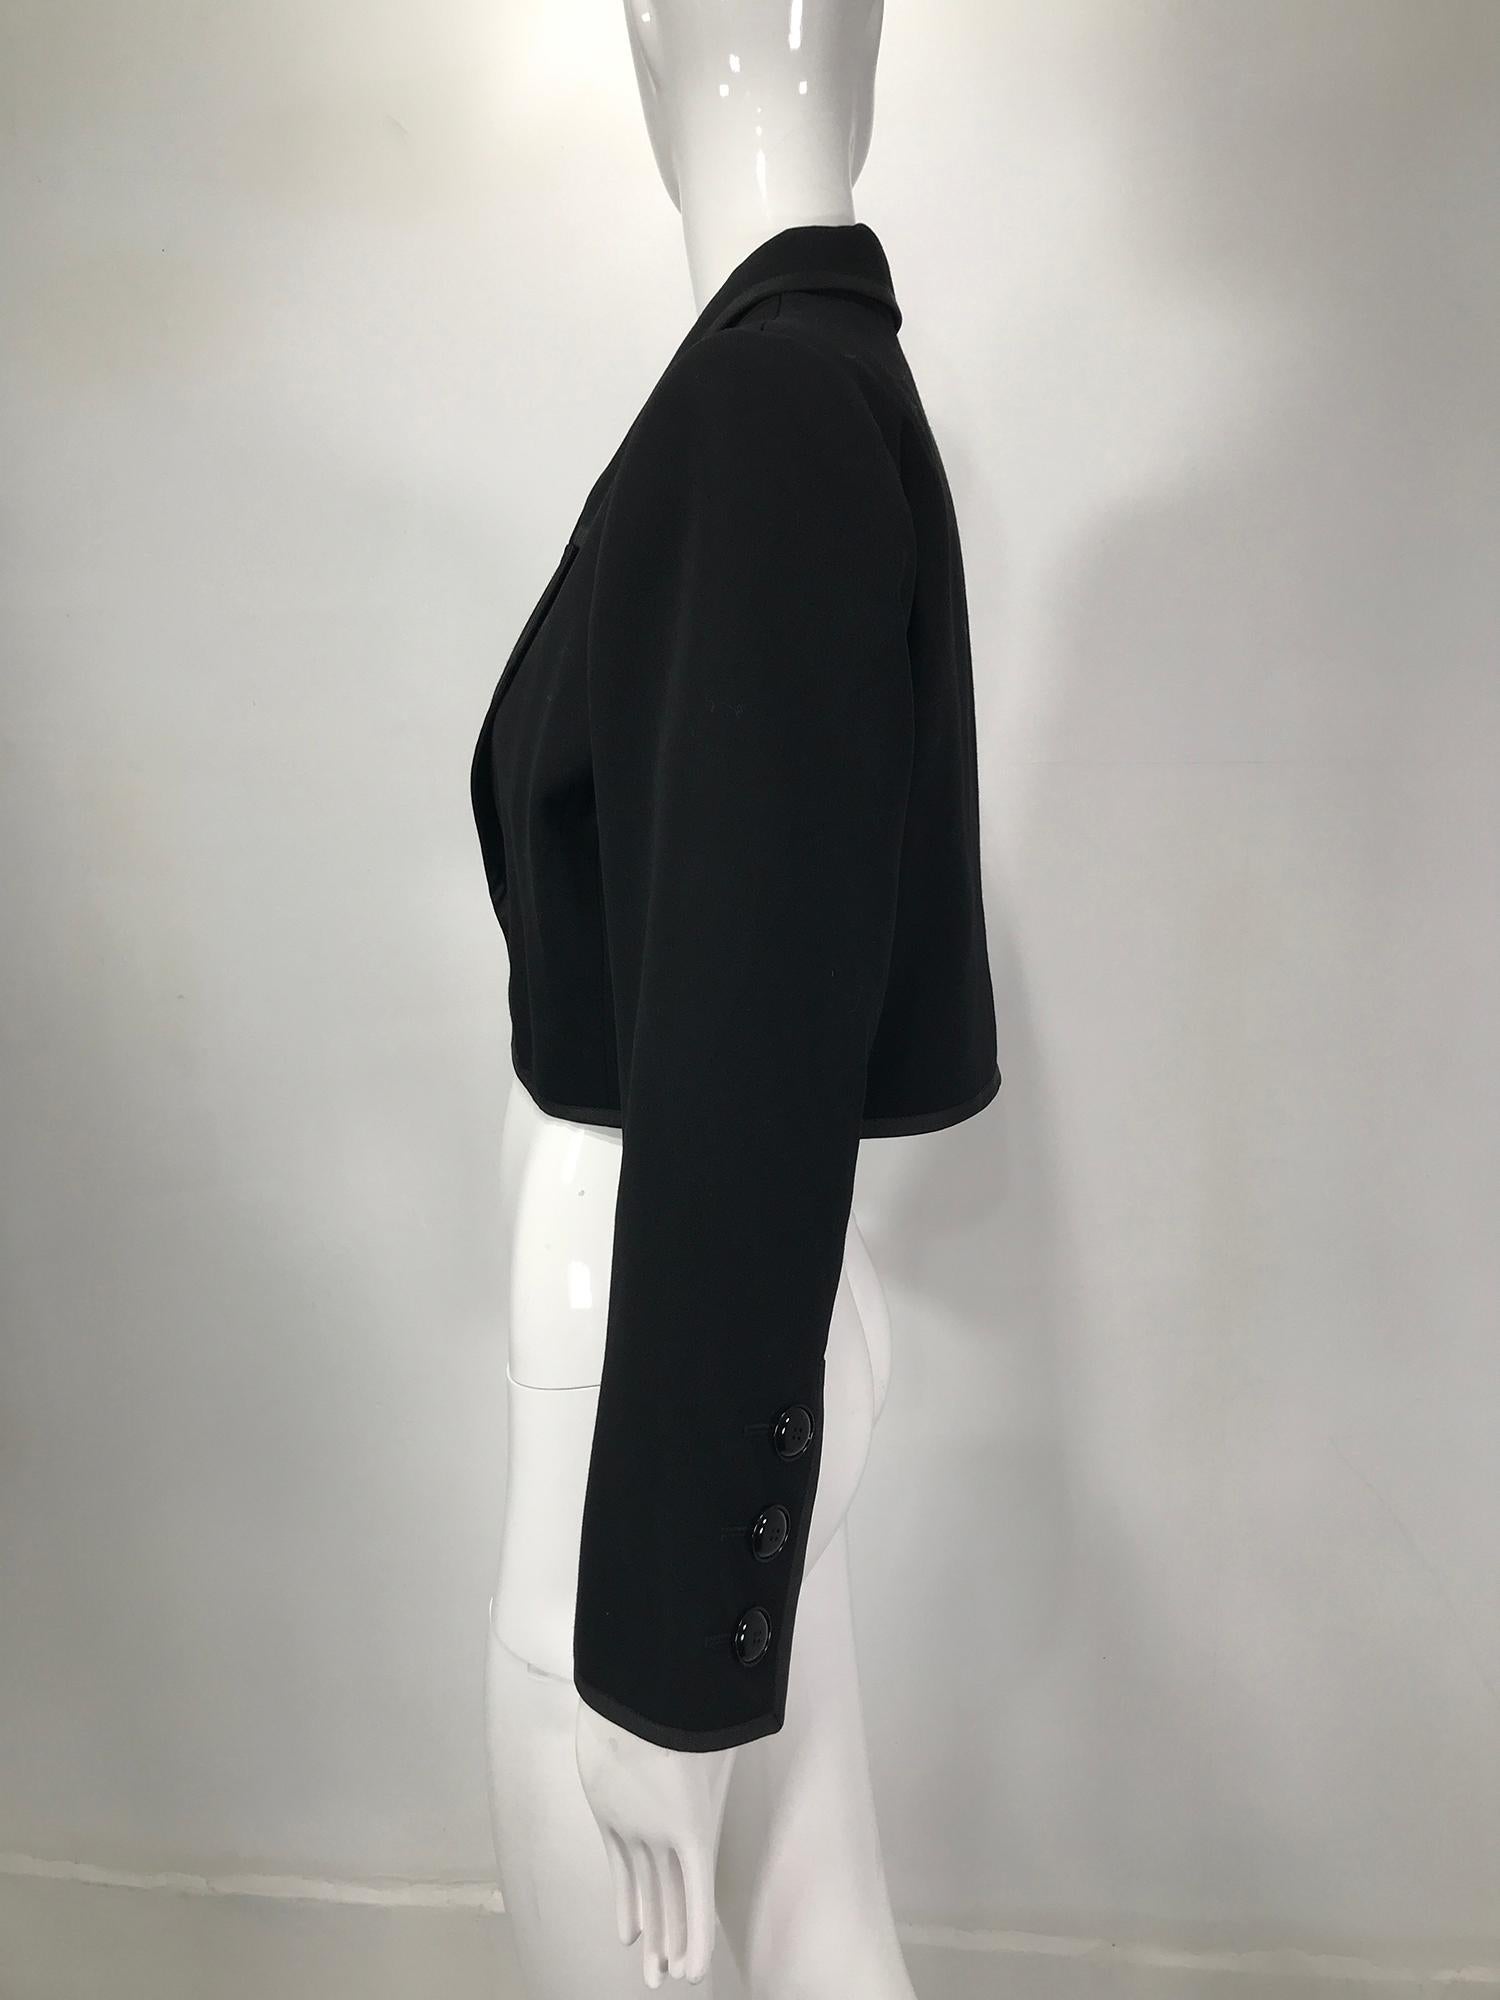 Yves Saint Laurent Black Gabardine Cropped Jacket 1970s 4